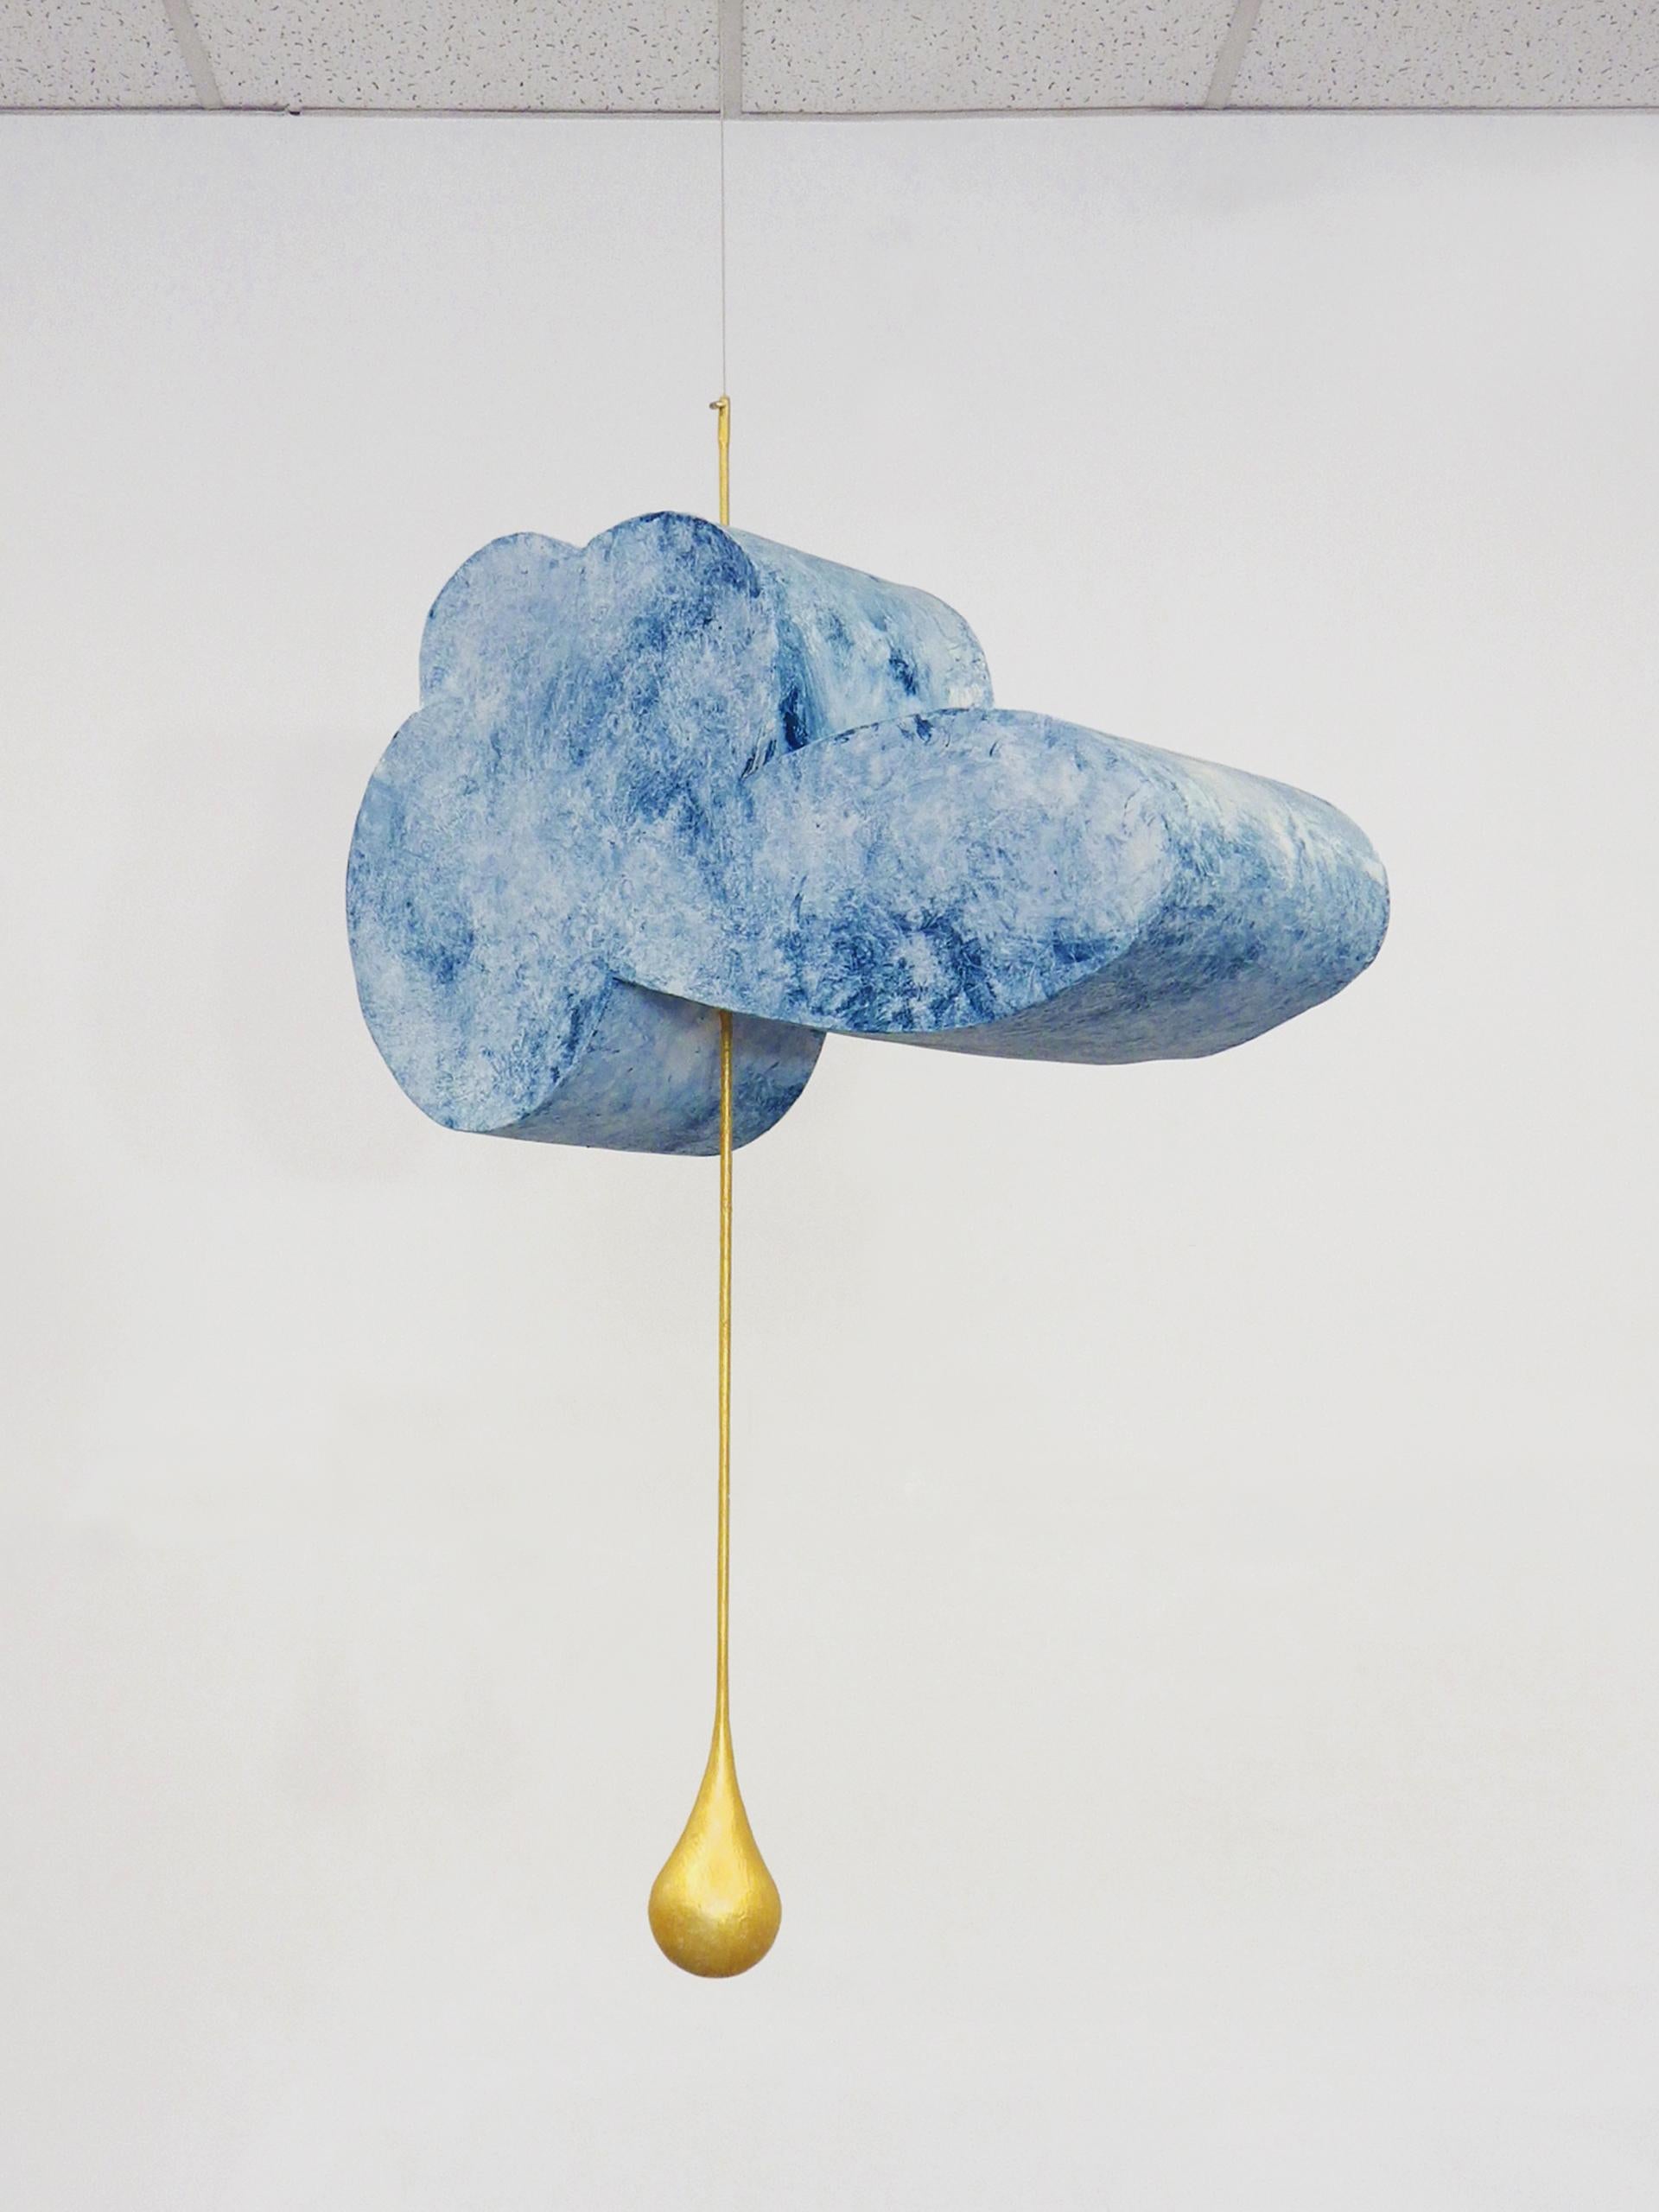 Hans Van Meeuwen Abstract Sculpture - Rain